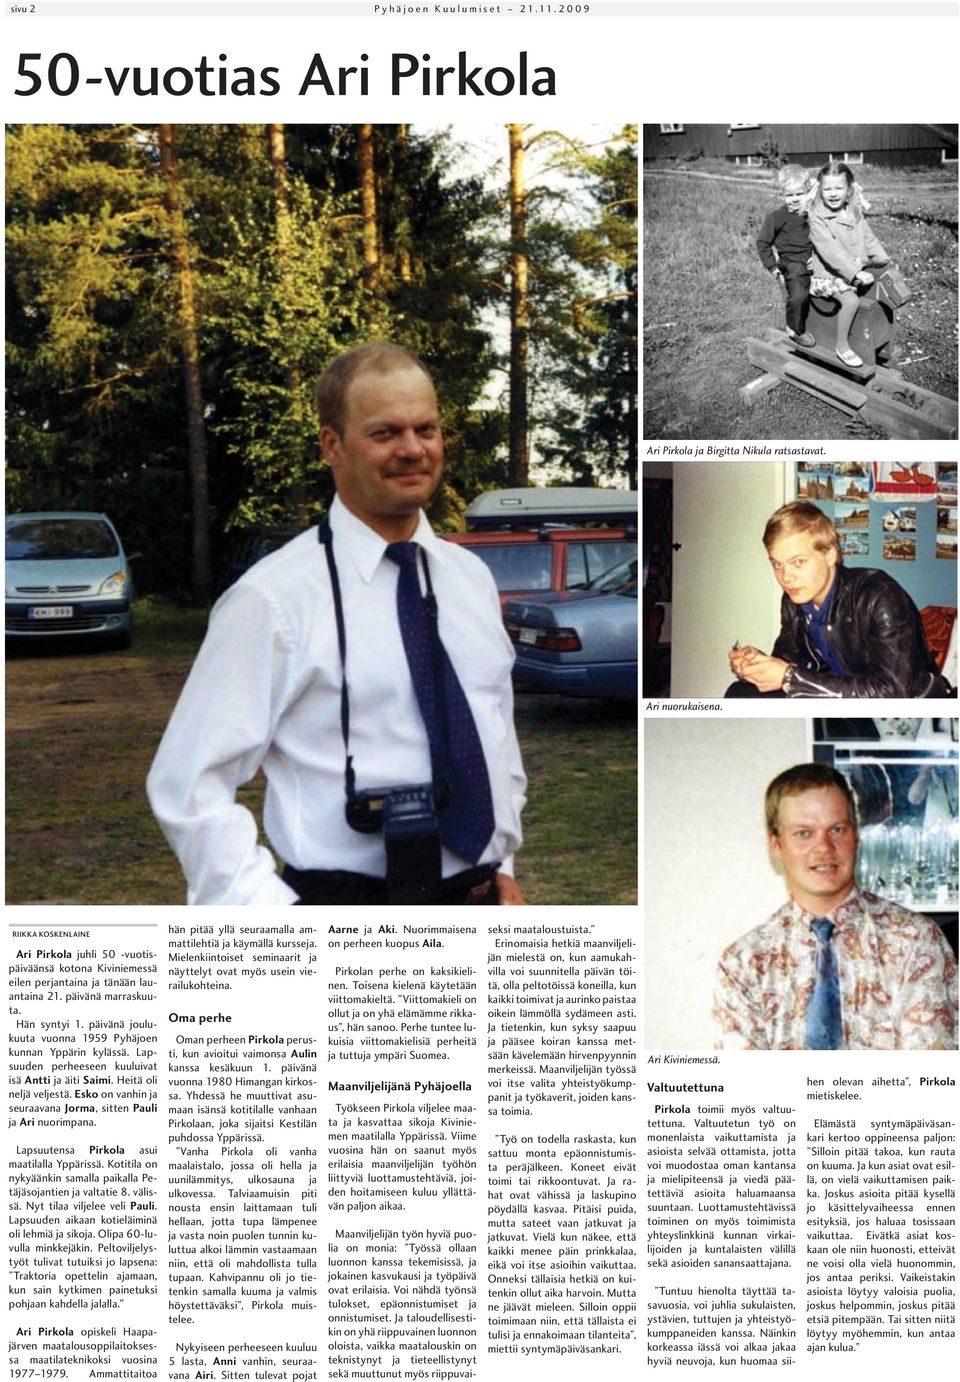 päivänä joulukuuta vuonna 1959 Pyhäjoen kunnan Yppärin kylässä. Lapsuuden perheeseen kuuluivat isä Antti ja äiti Saimi. Heitä oli neljä veljestä.